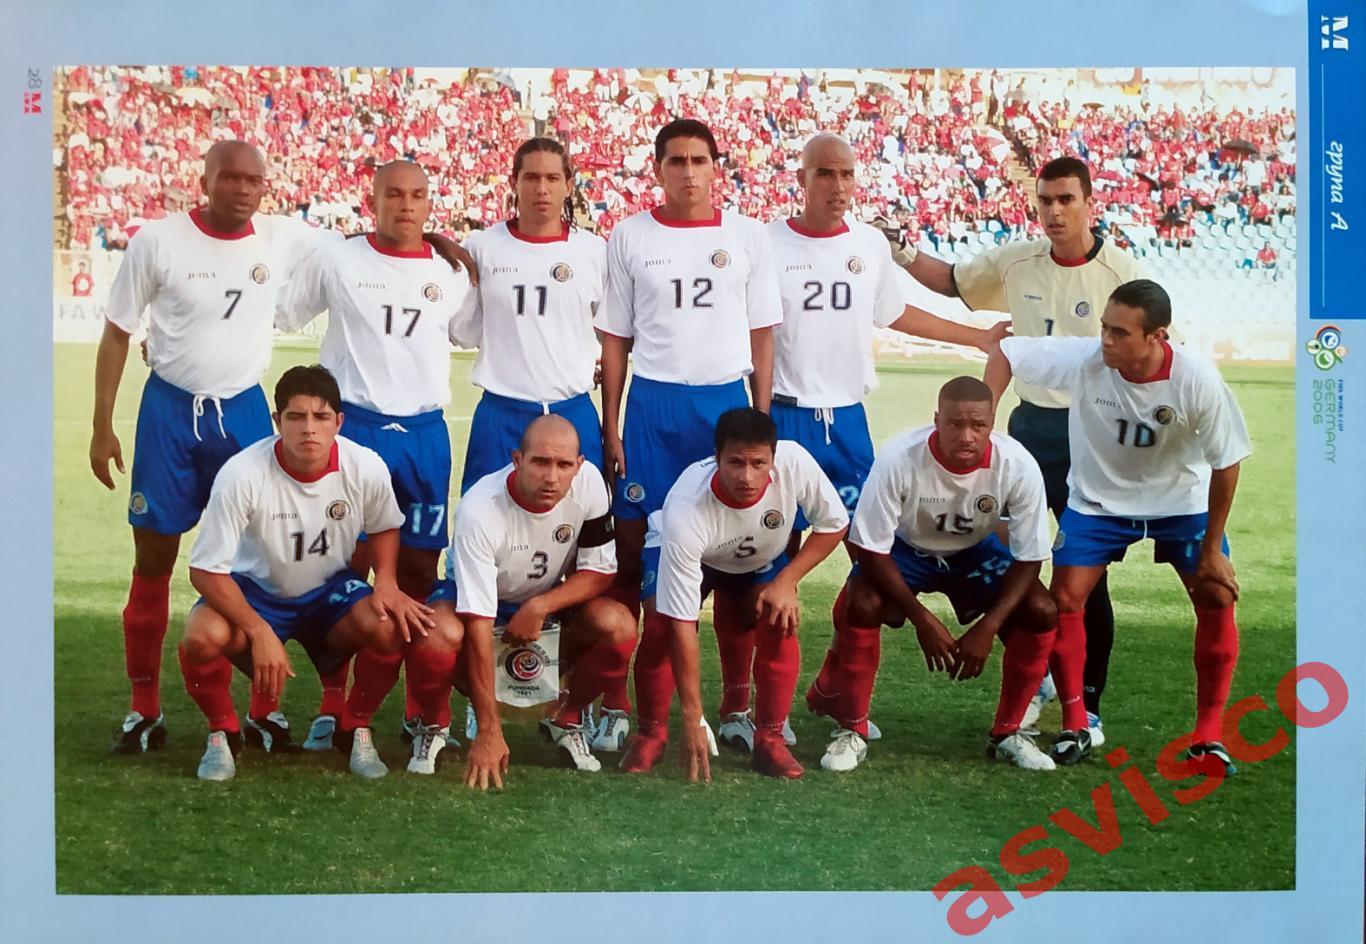 Чемпионат Мира по футболу в Германии 2006 года. Группа B. Представление команд. 3